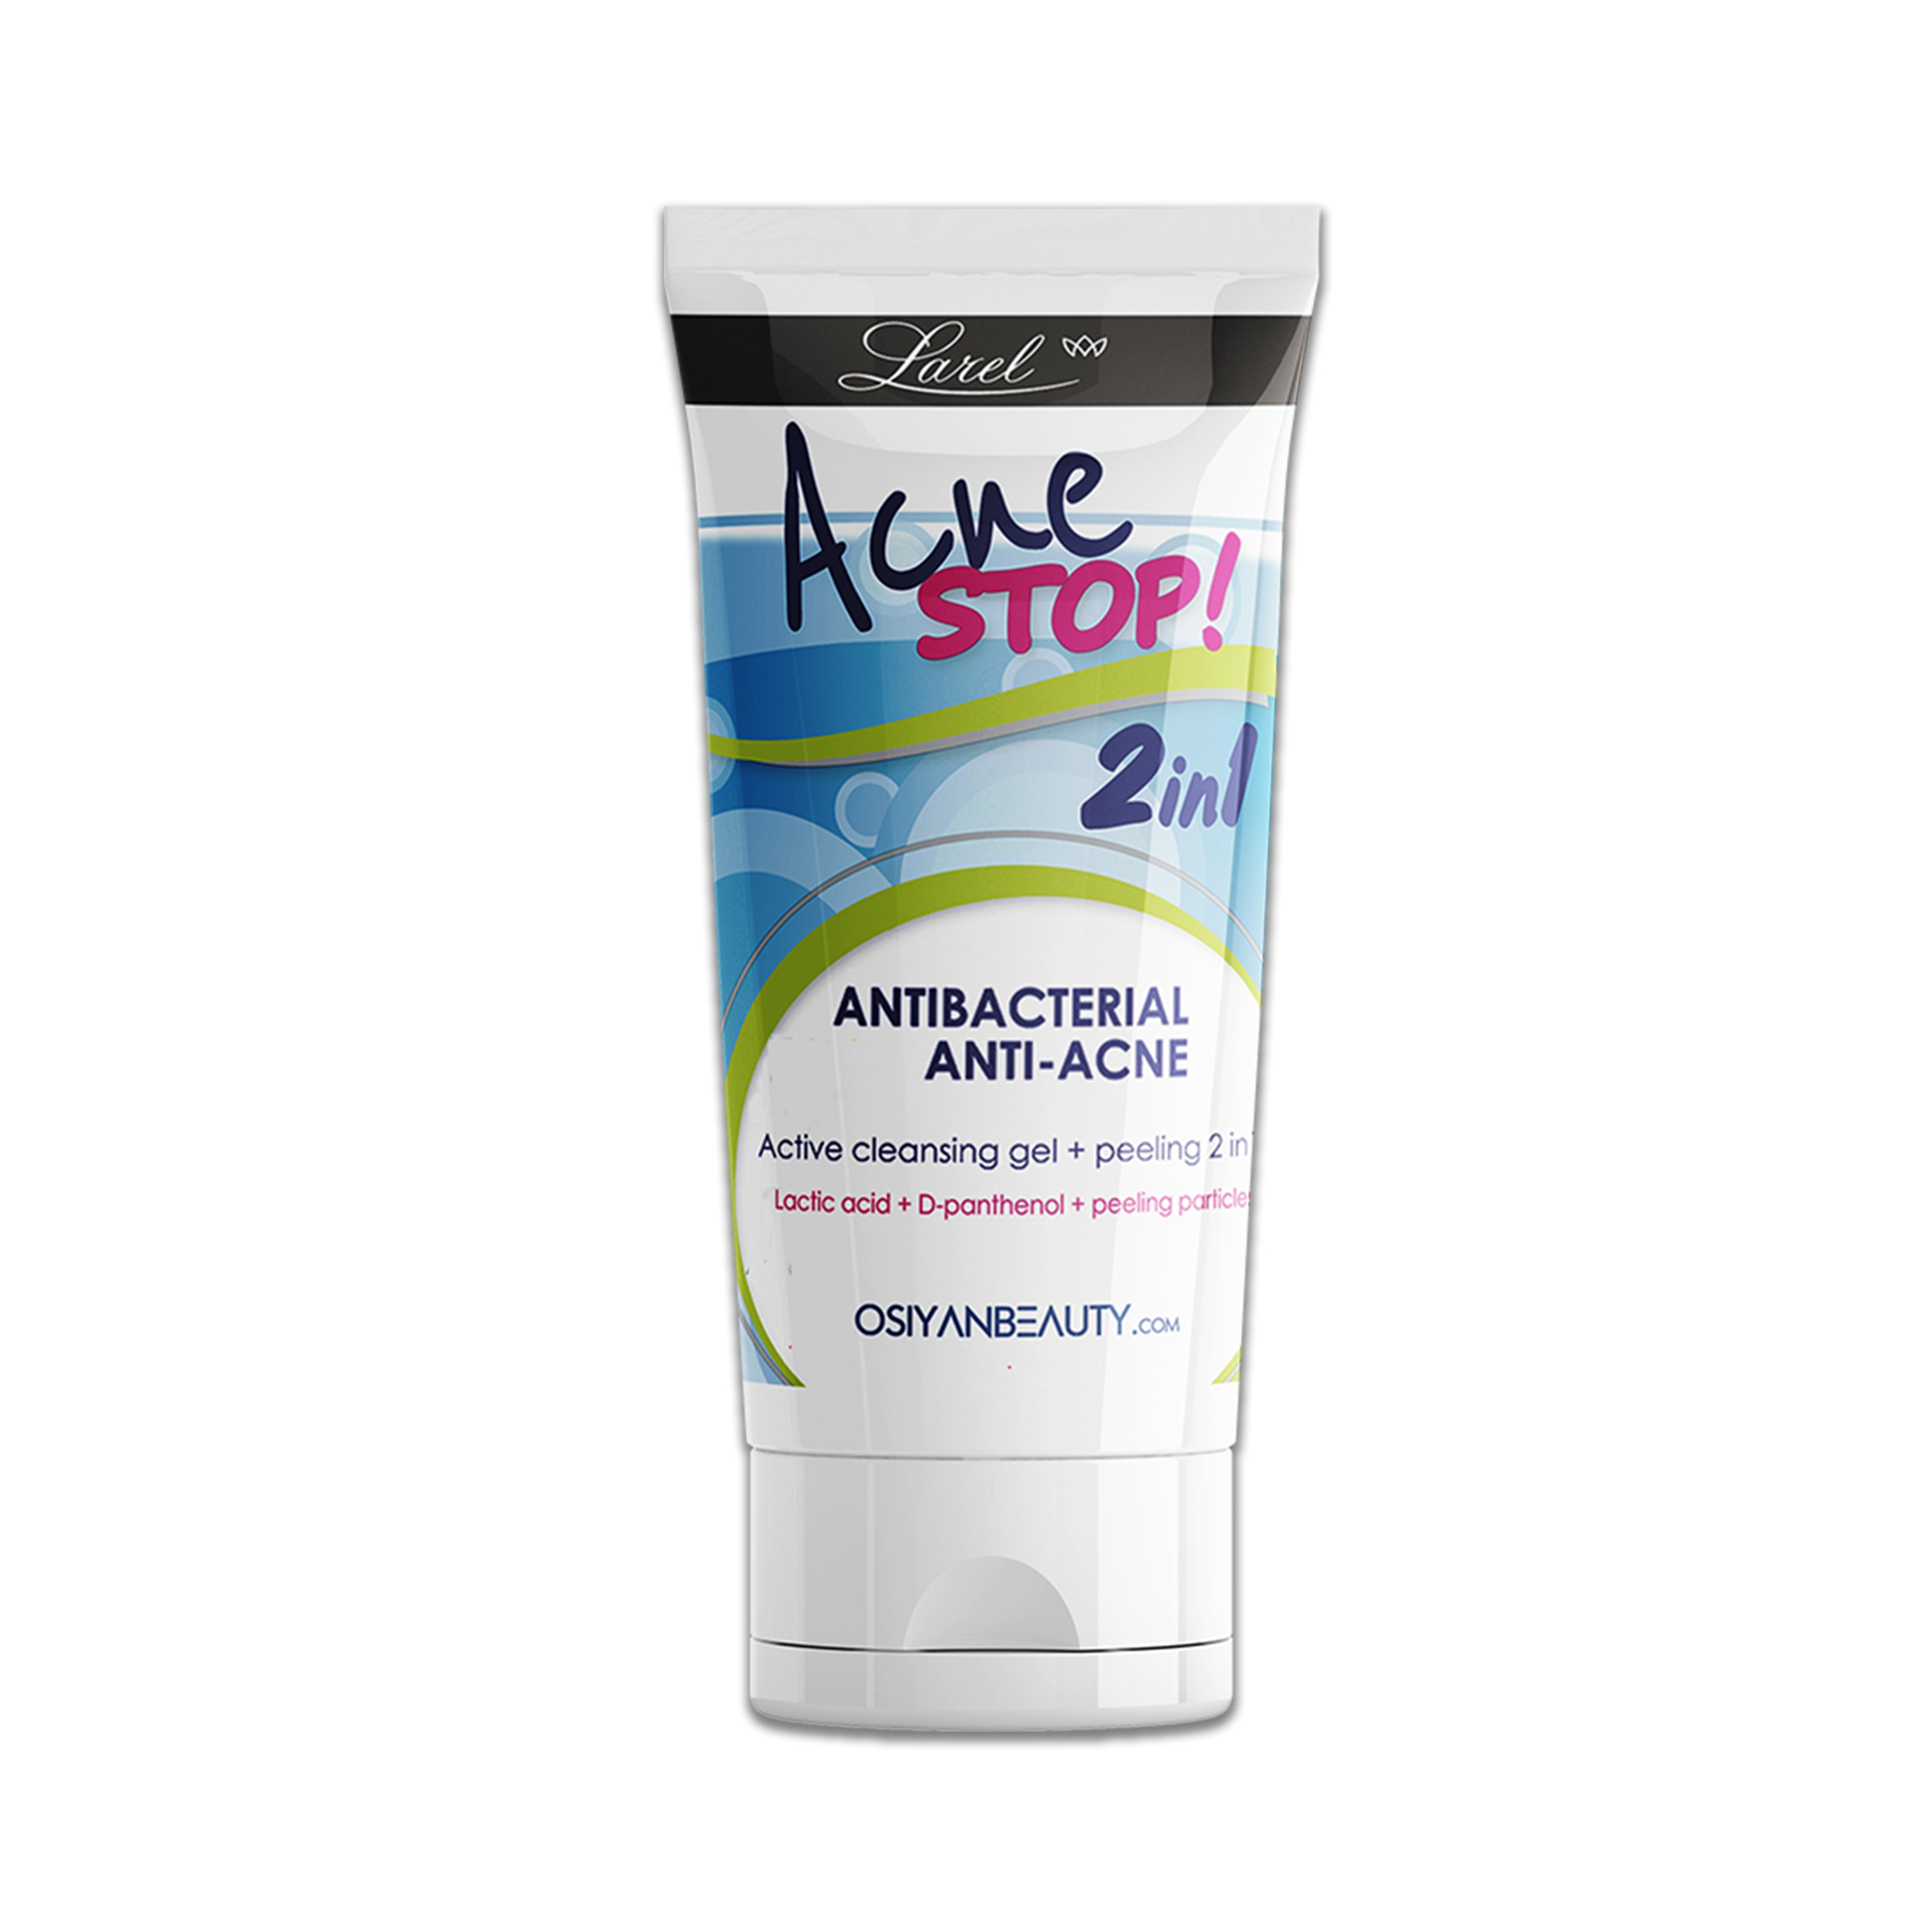 Larel Anti-Acne Active Gel Peeling Washing 2in1 Antibacterial (150 ml)